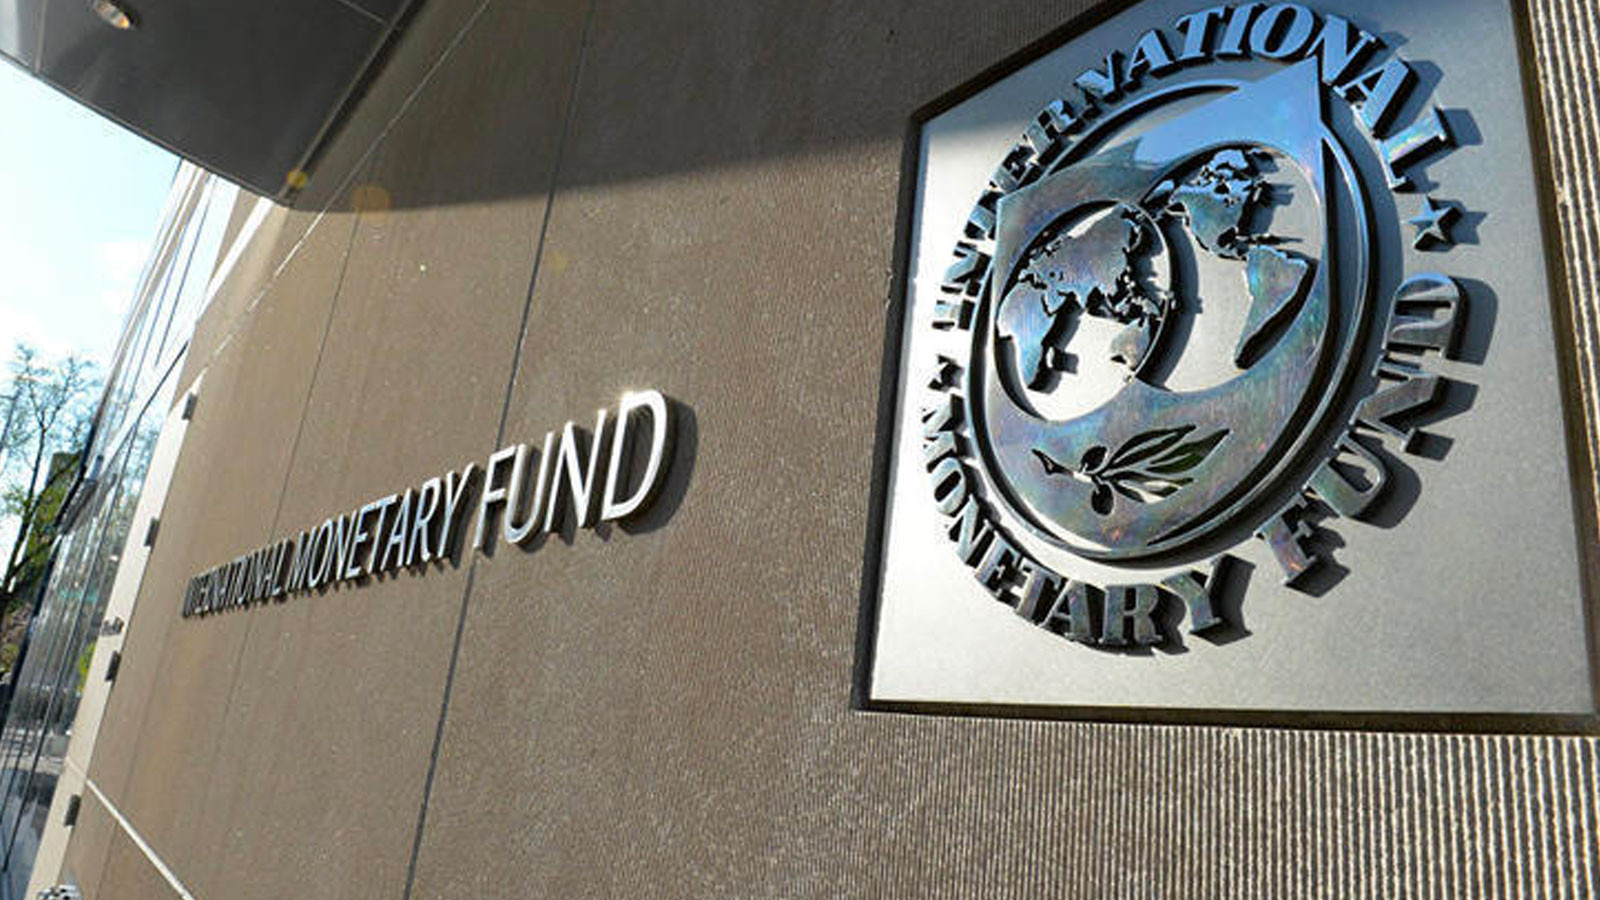 IMF'den merkez bankalarına kritik uyarı